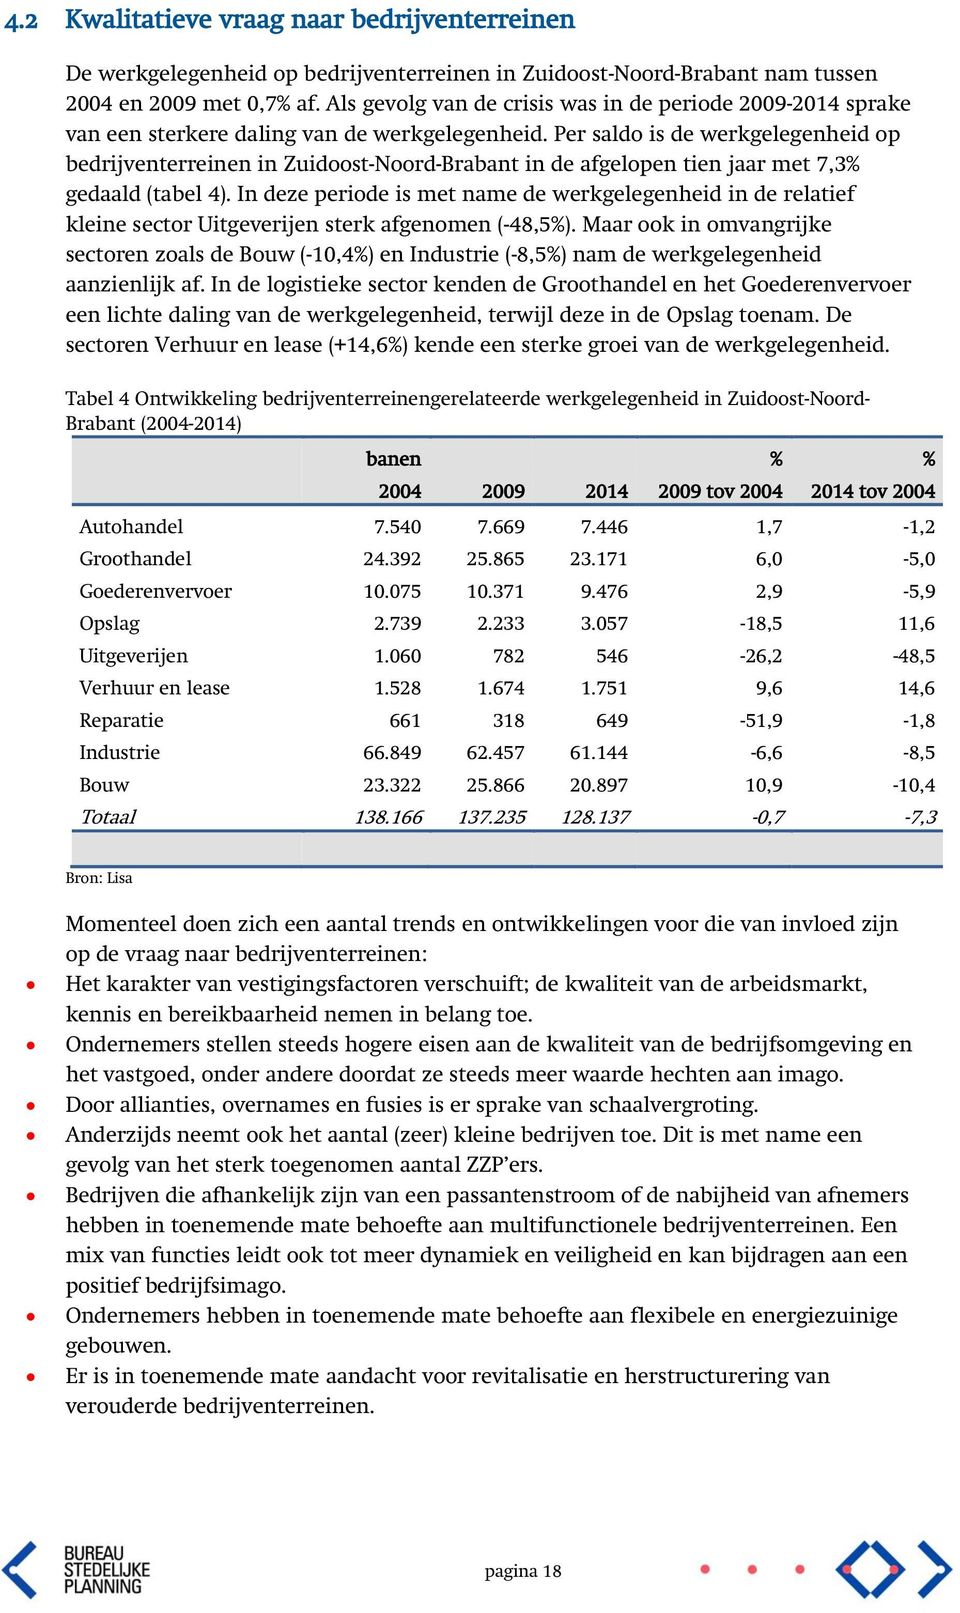 Per saldo is de werkgelegenheid op bedrijventerreinen in Zuidoost-Noord-Brabant in de afgelopen tien jaar met 7,3% gedaald (tabel 4).